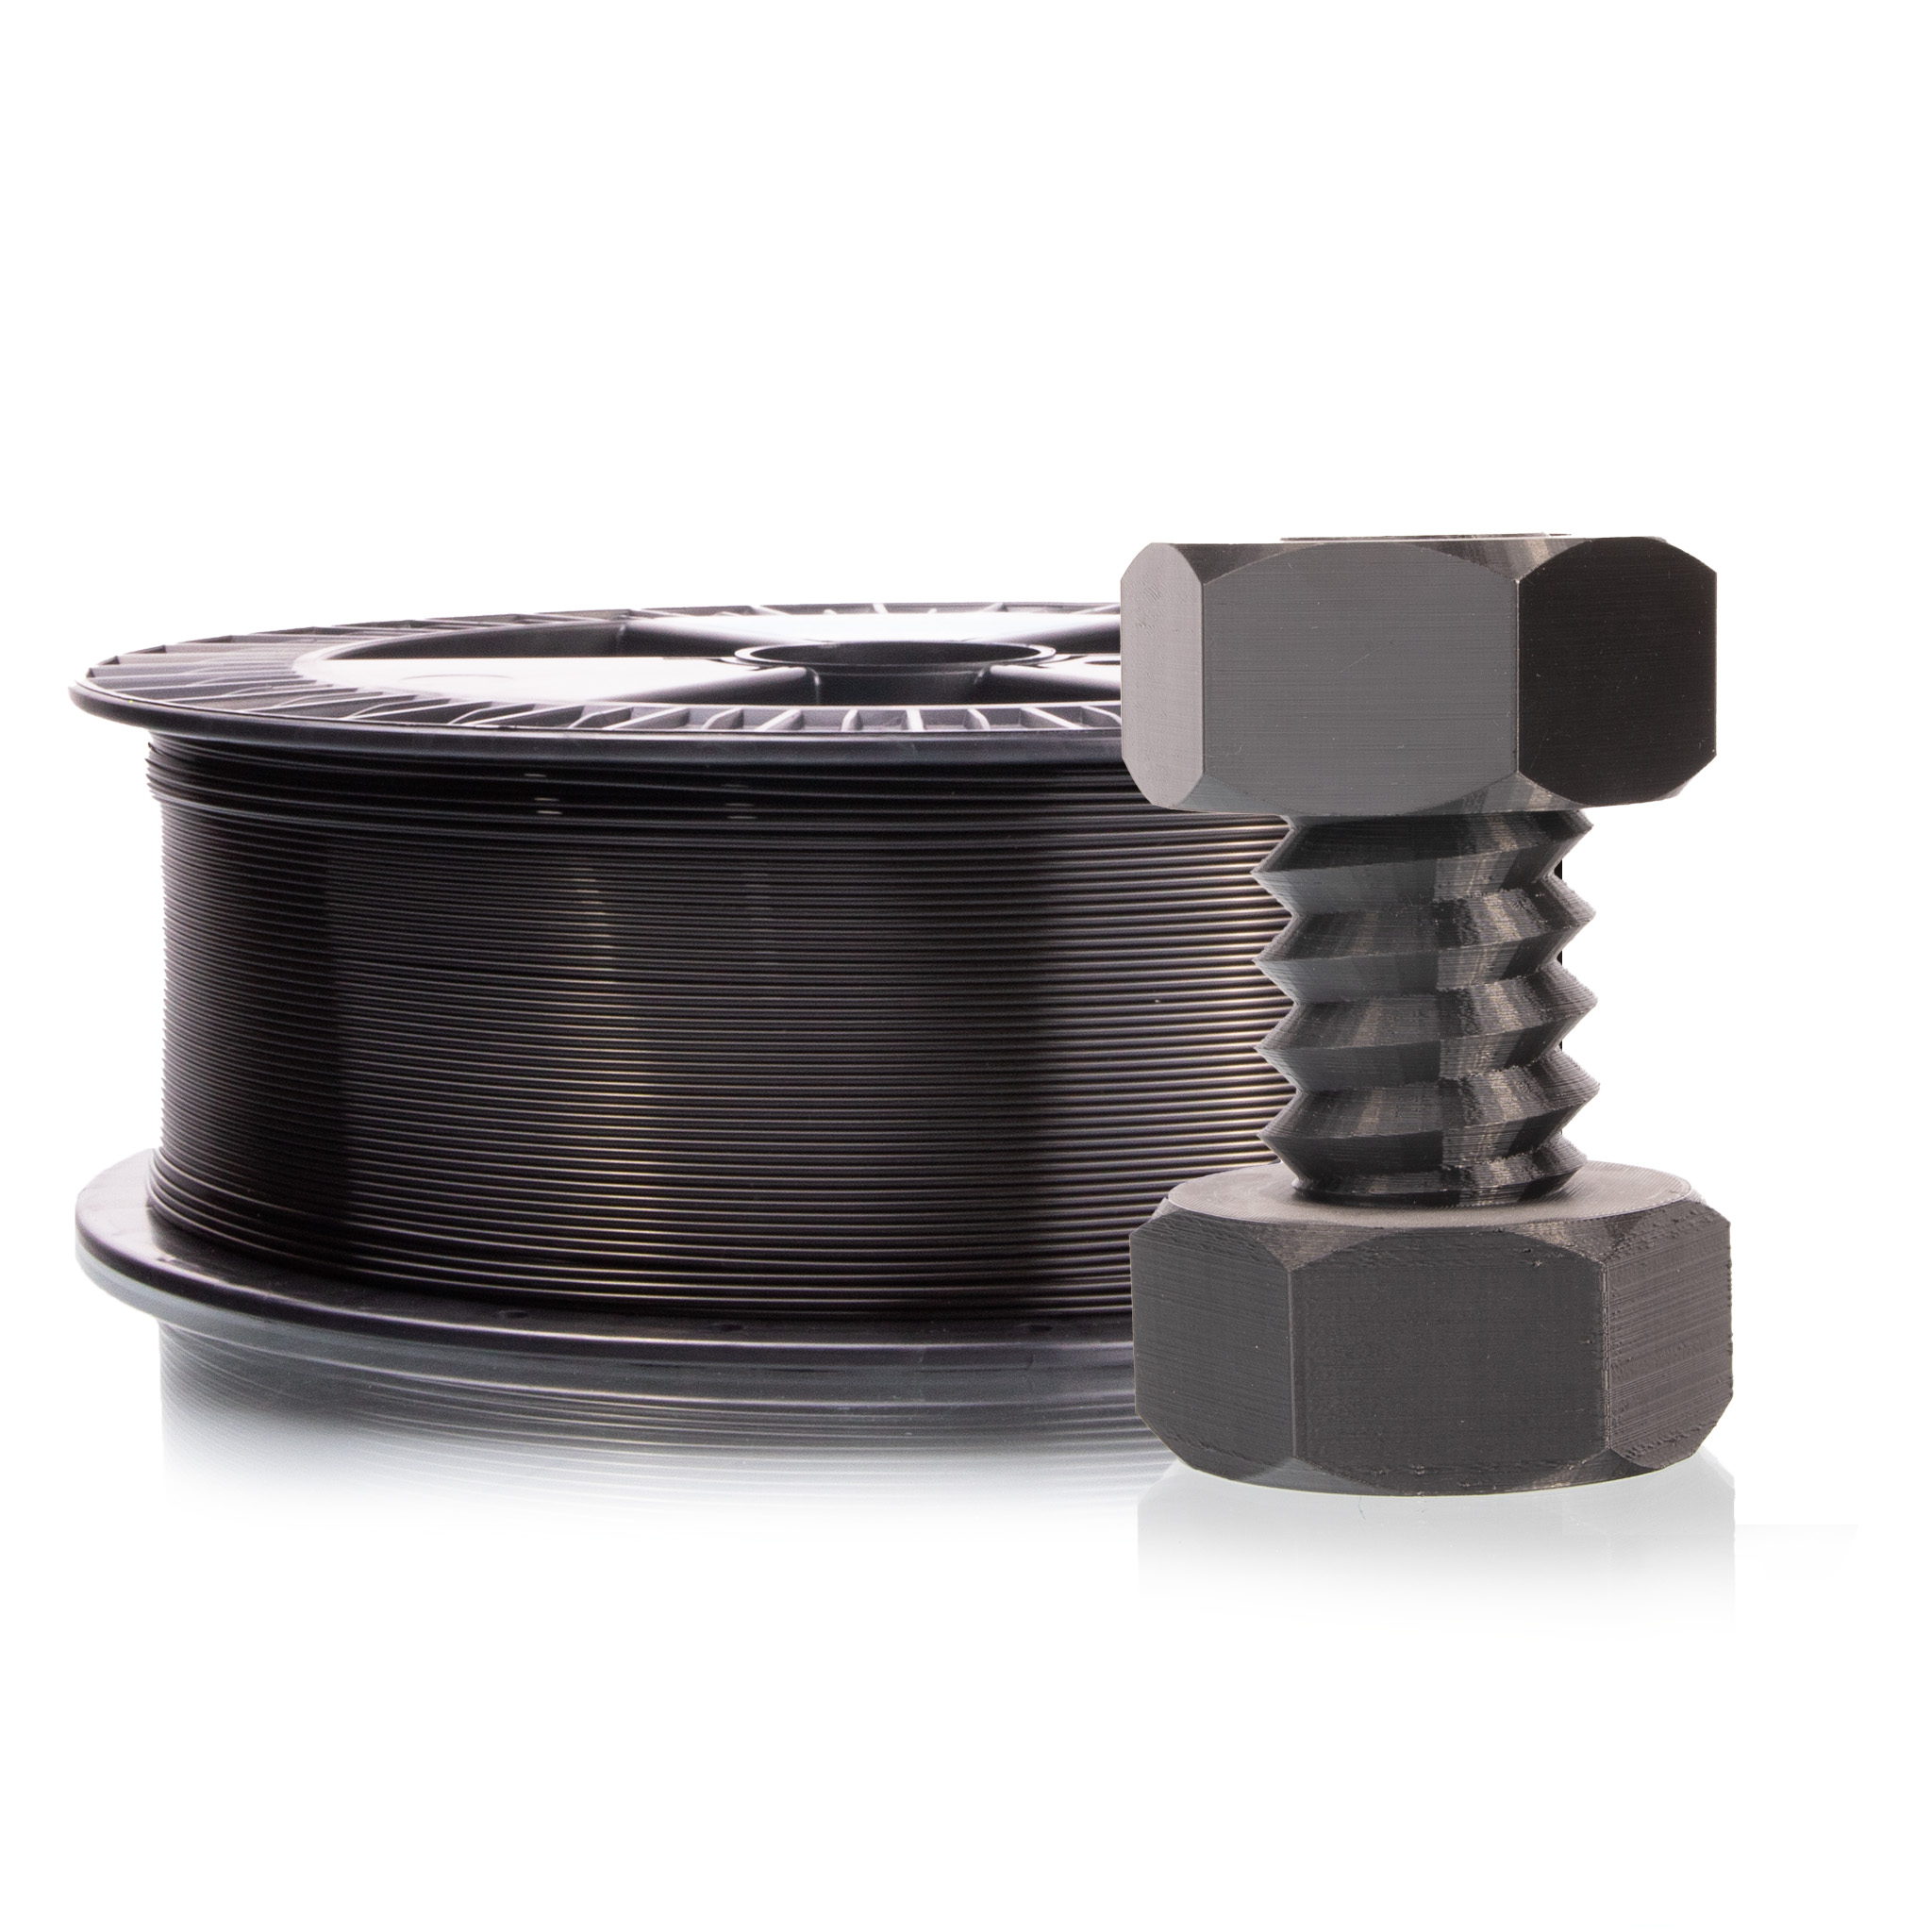 PET-G tisková struna černá 1,75 mm 2 kg Filament PM výhodné balení